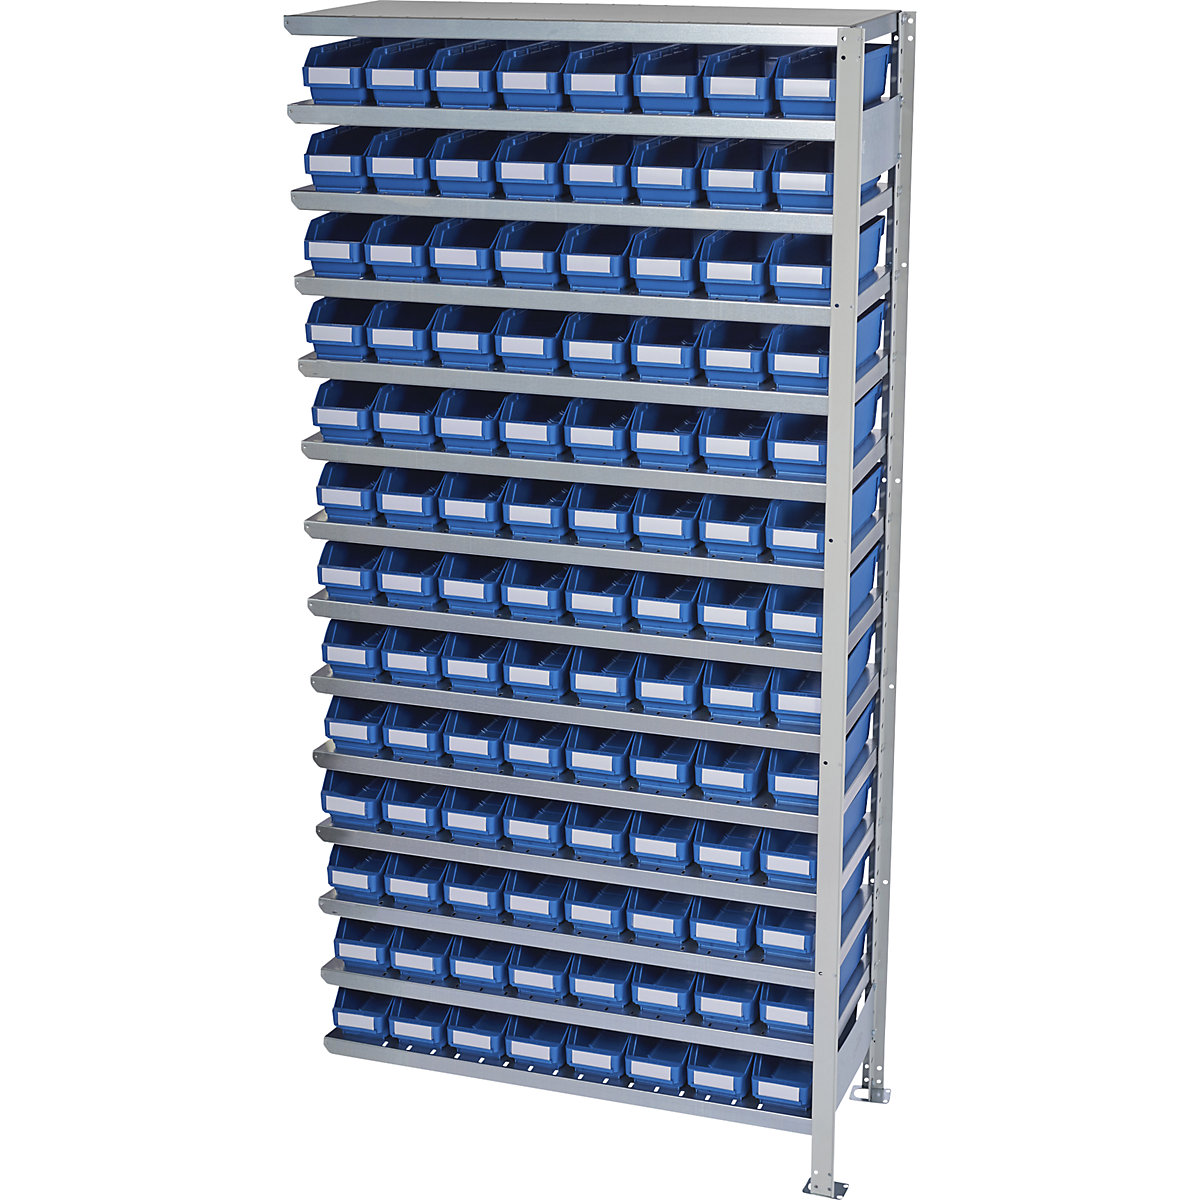 Összedugaszolós állvány dobozokkal – STEMO, állványmagasság 2100 mm, bővítő állvány, 300 mm mély, 104 kék doboz-15